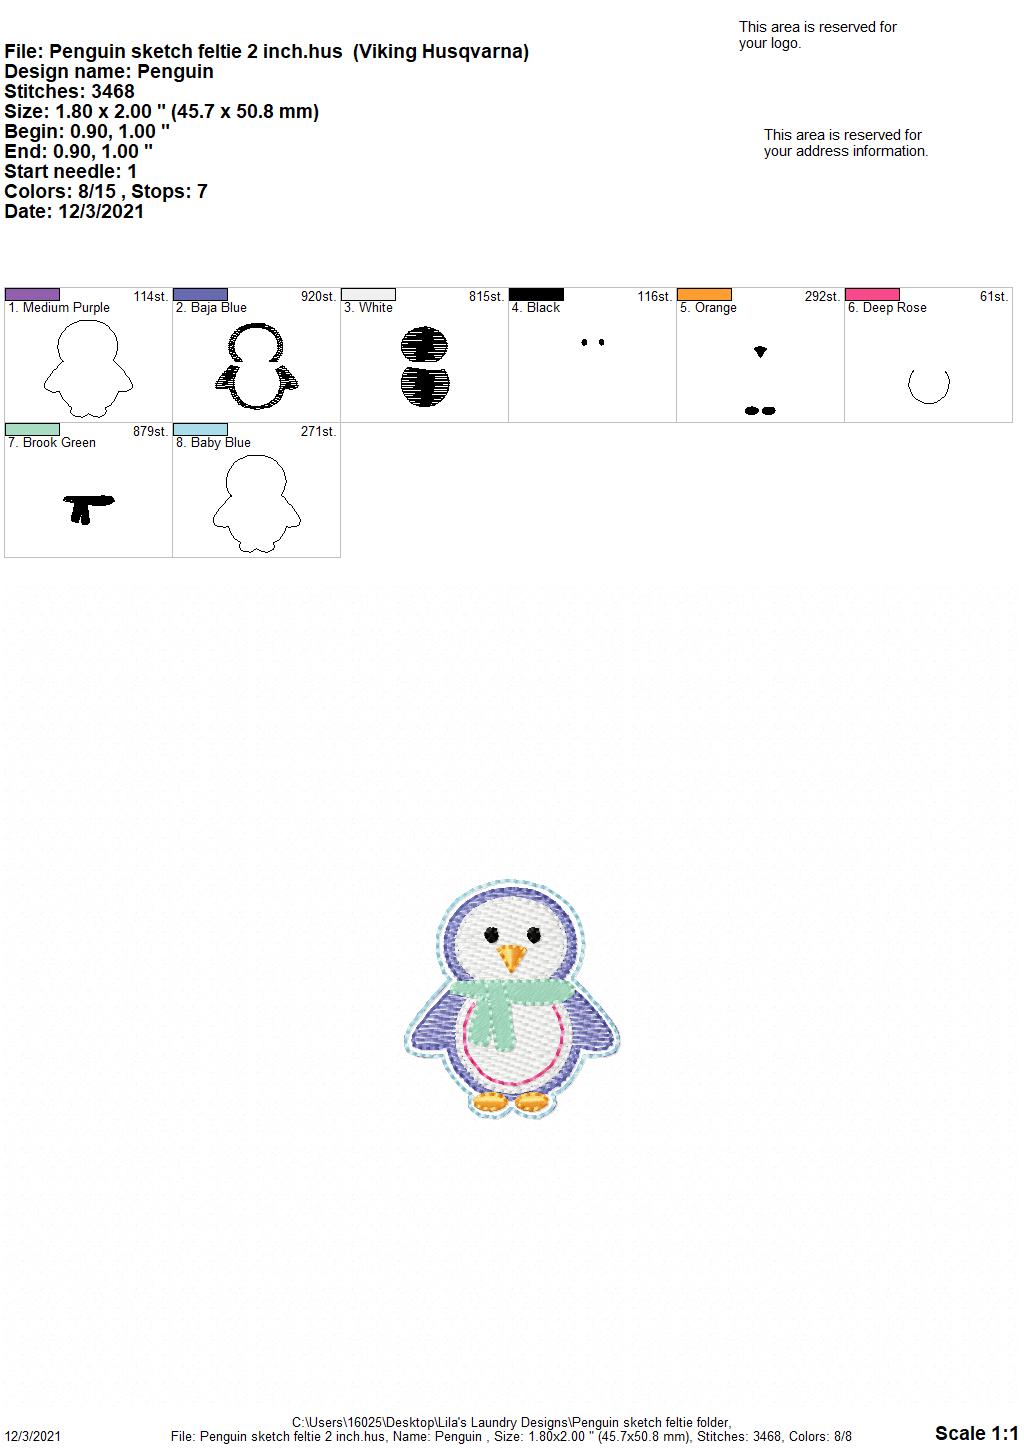 Penguin Sketch Feltie - Digital Embroidery Design